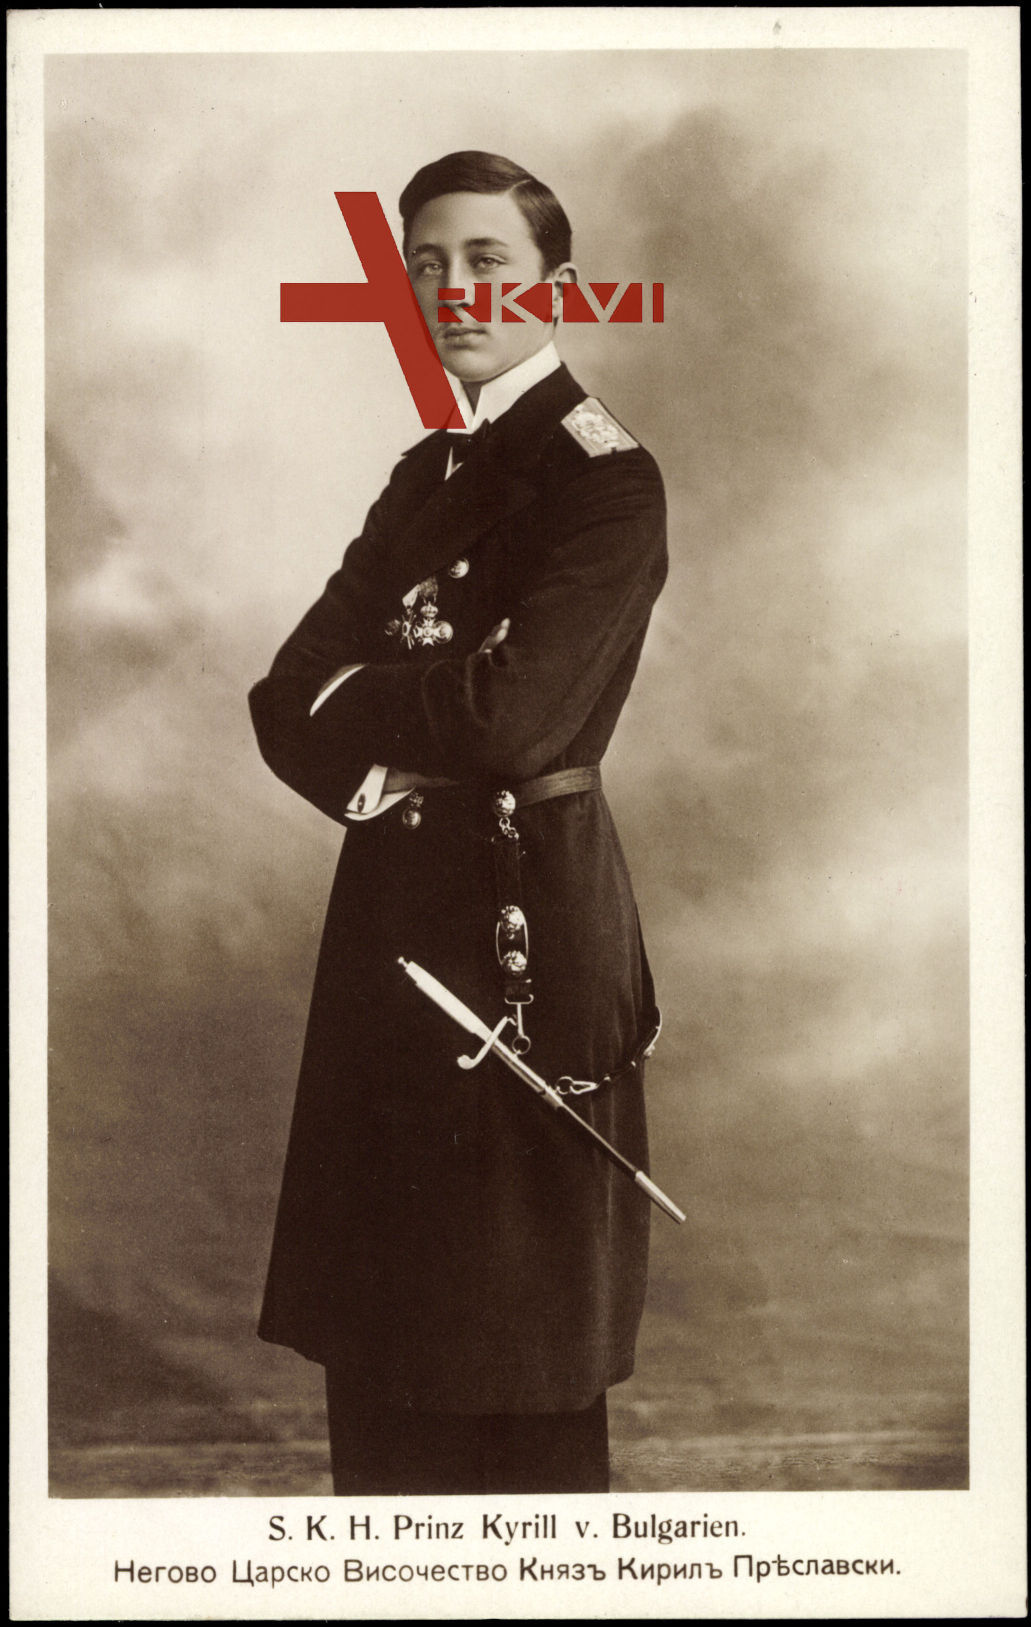 S.K.H. Prinz Kyrill von Bulgarien, Uniform, Messer